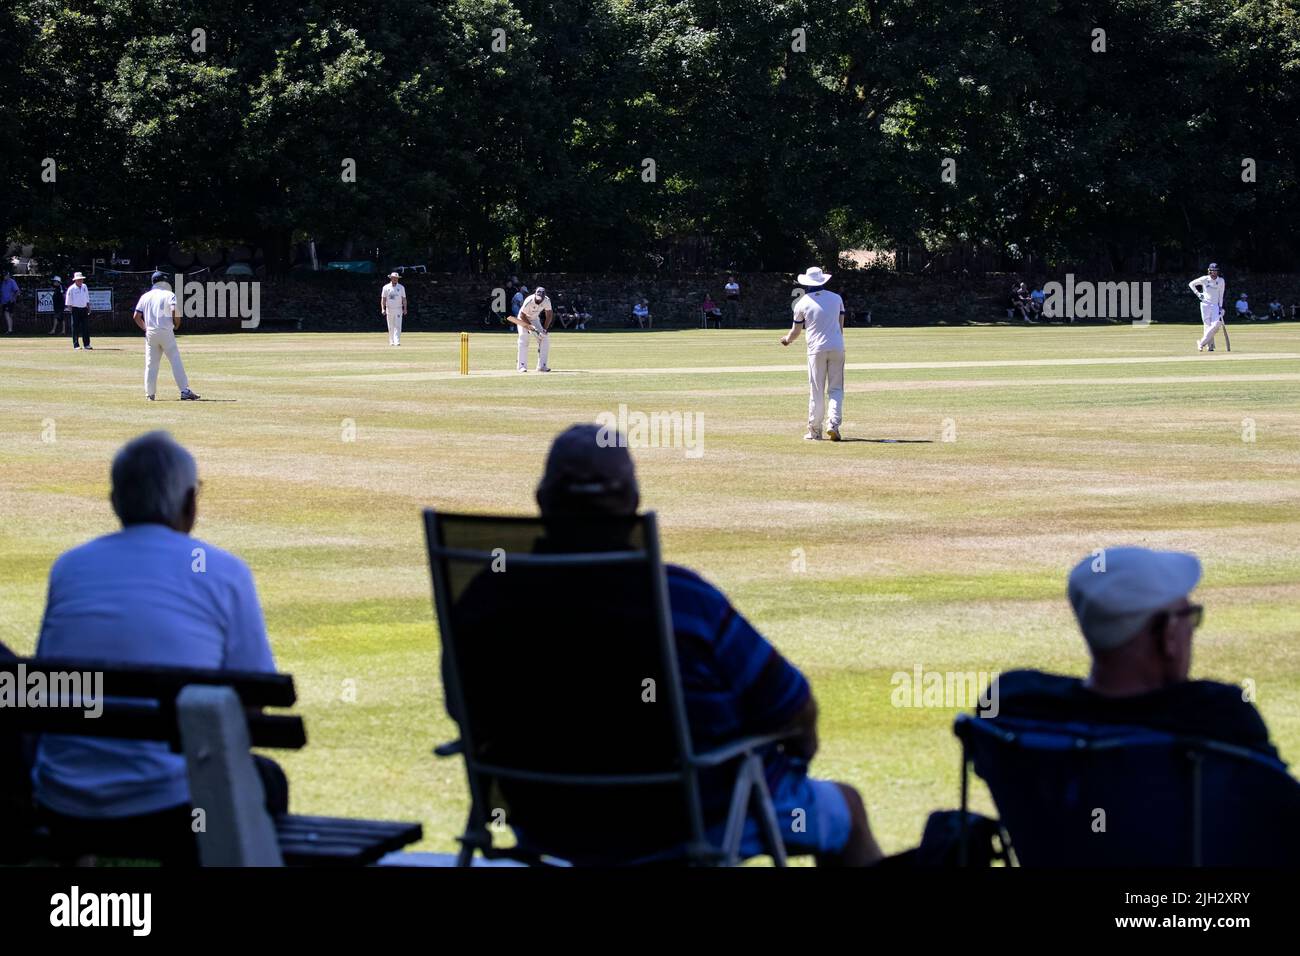 Espectadores interesados podrán ver el partido Village Cricket en un hermoso terreno arbolado a mediados del verano en West Yorkshire Foto de stock